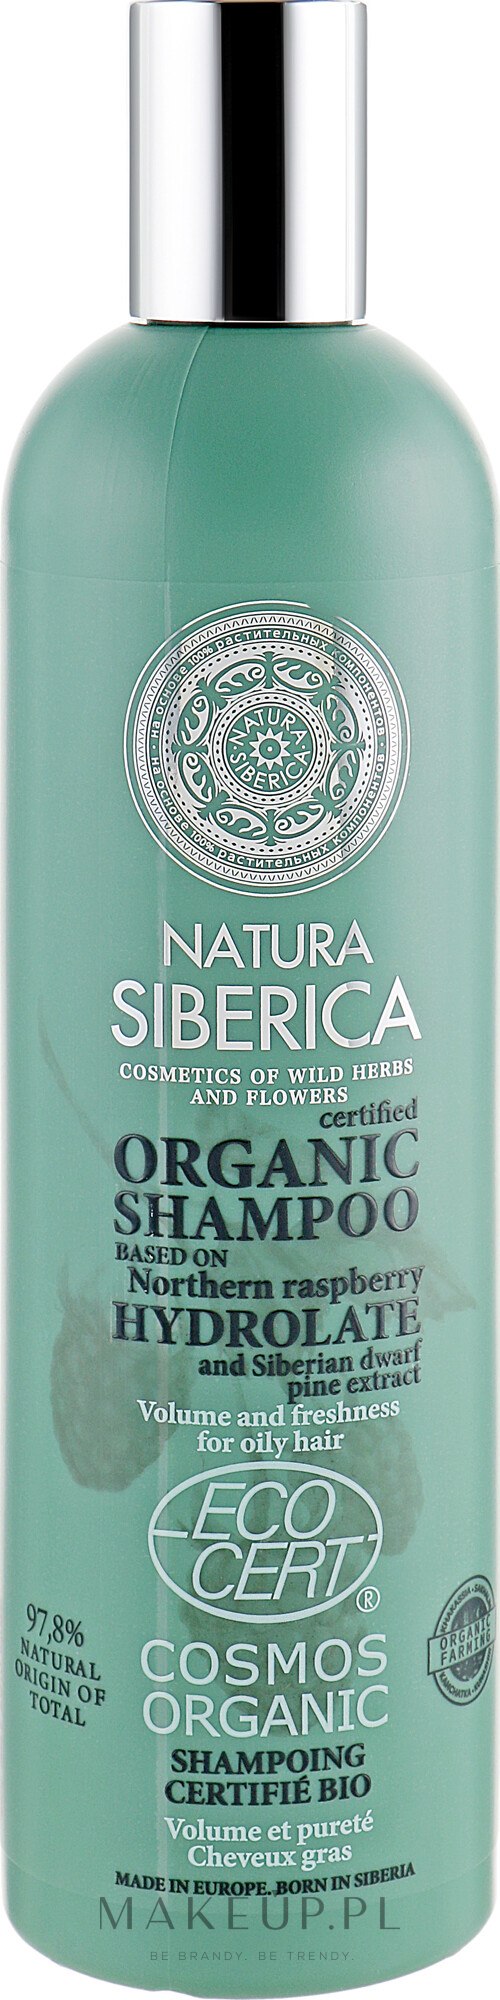 szampon natura siberica do włosów